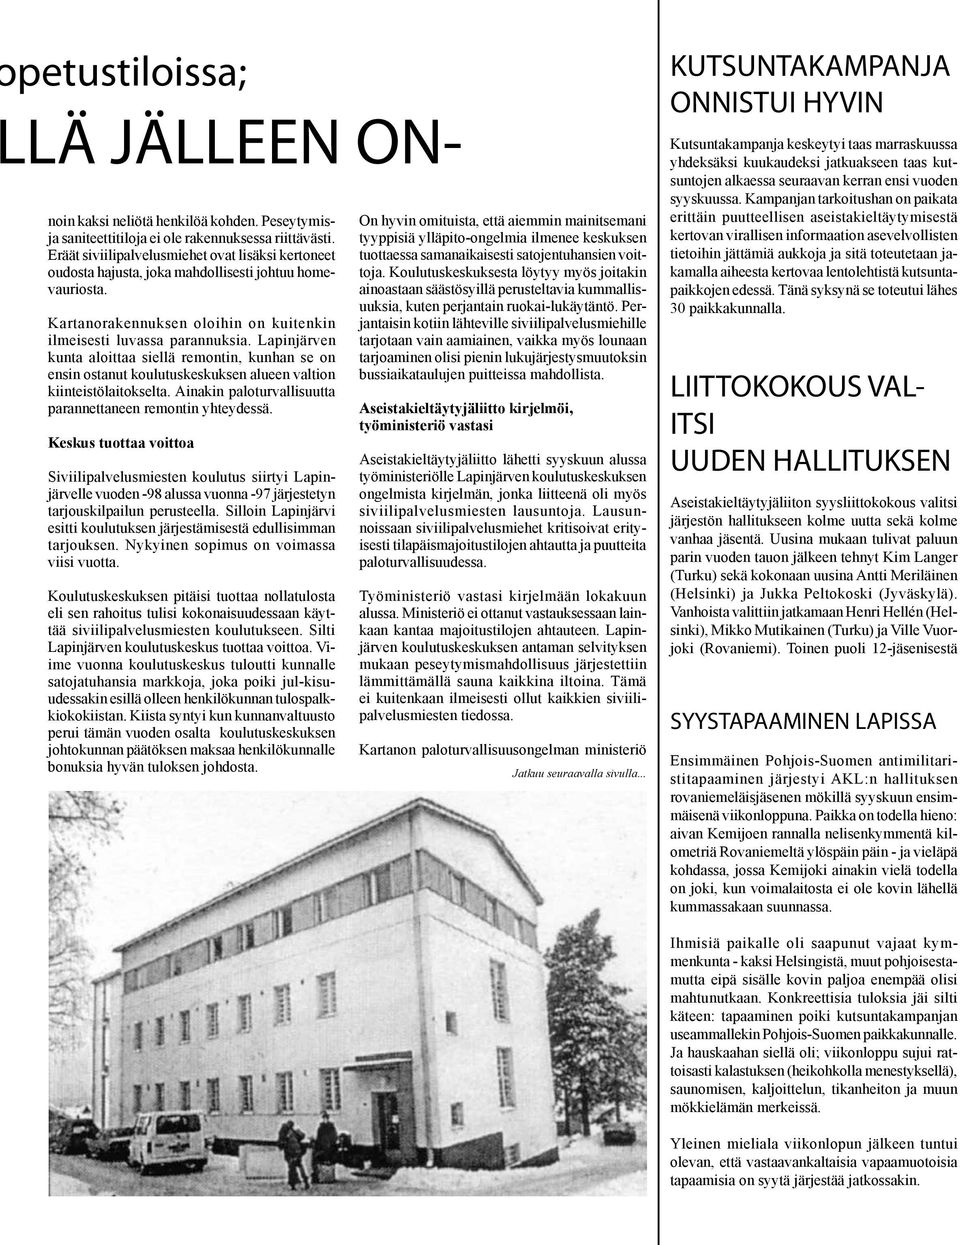 Lapinjärven kunta aloittaa siellä remontin, kunhan se on ensin ostanut koulutuskeskuksen alueen valtion kiinteistölaitokselta. Ainakin palo turvallisuutta parannettaneen remontin yhteydessä.